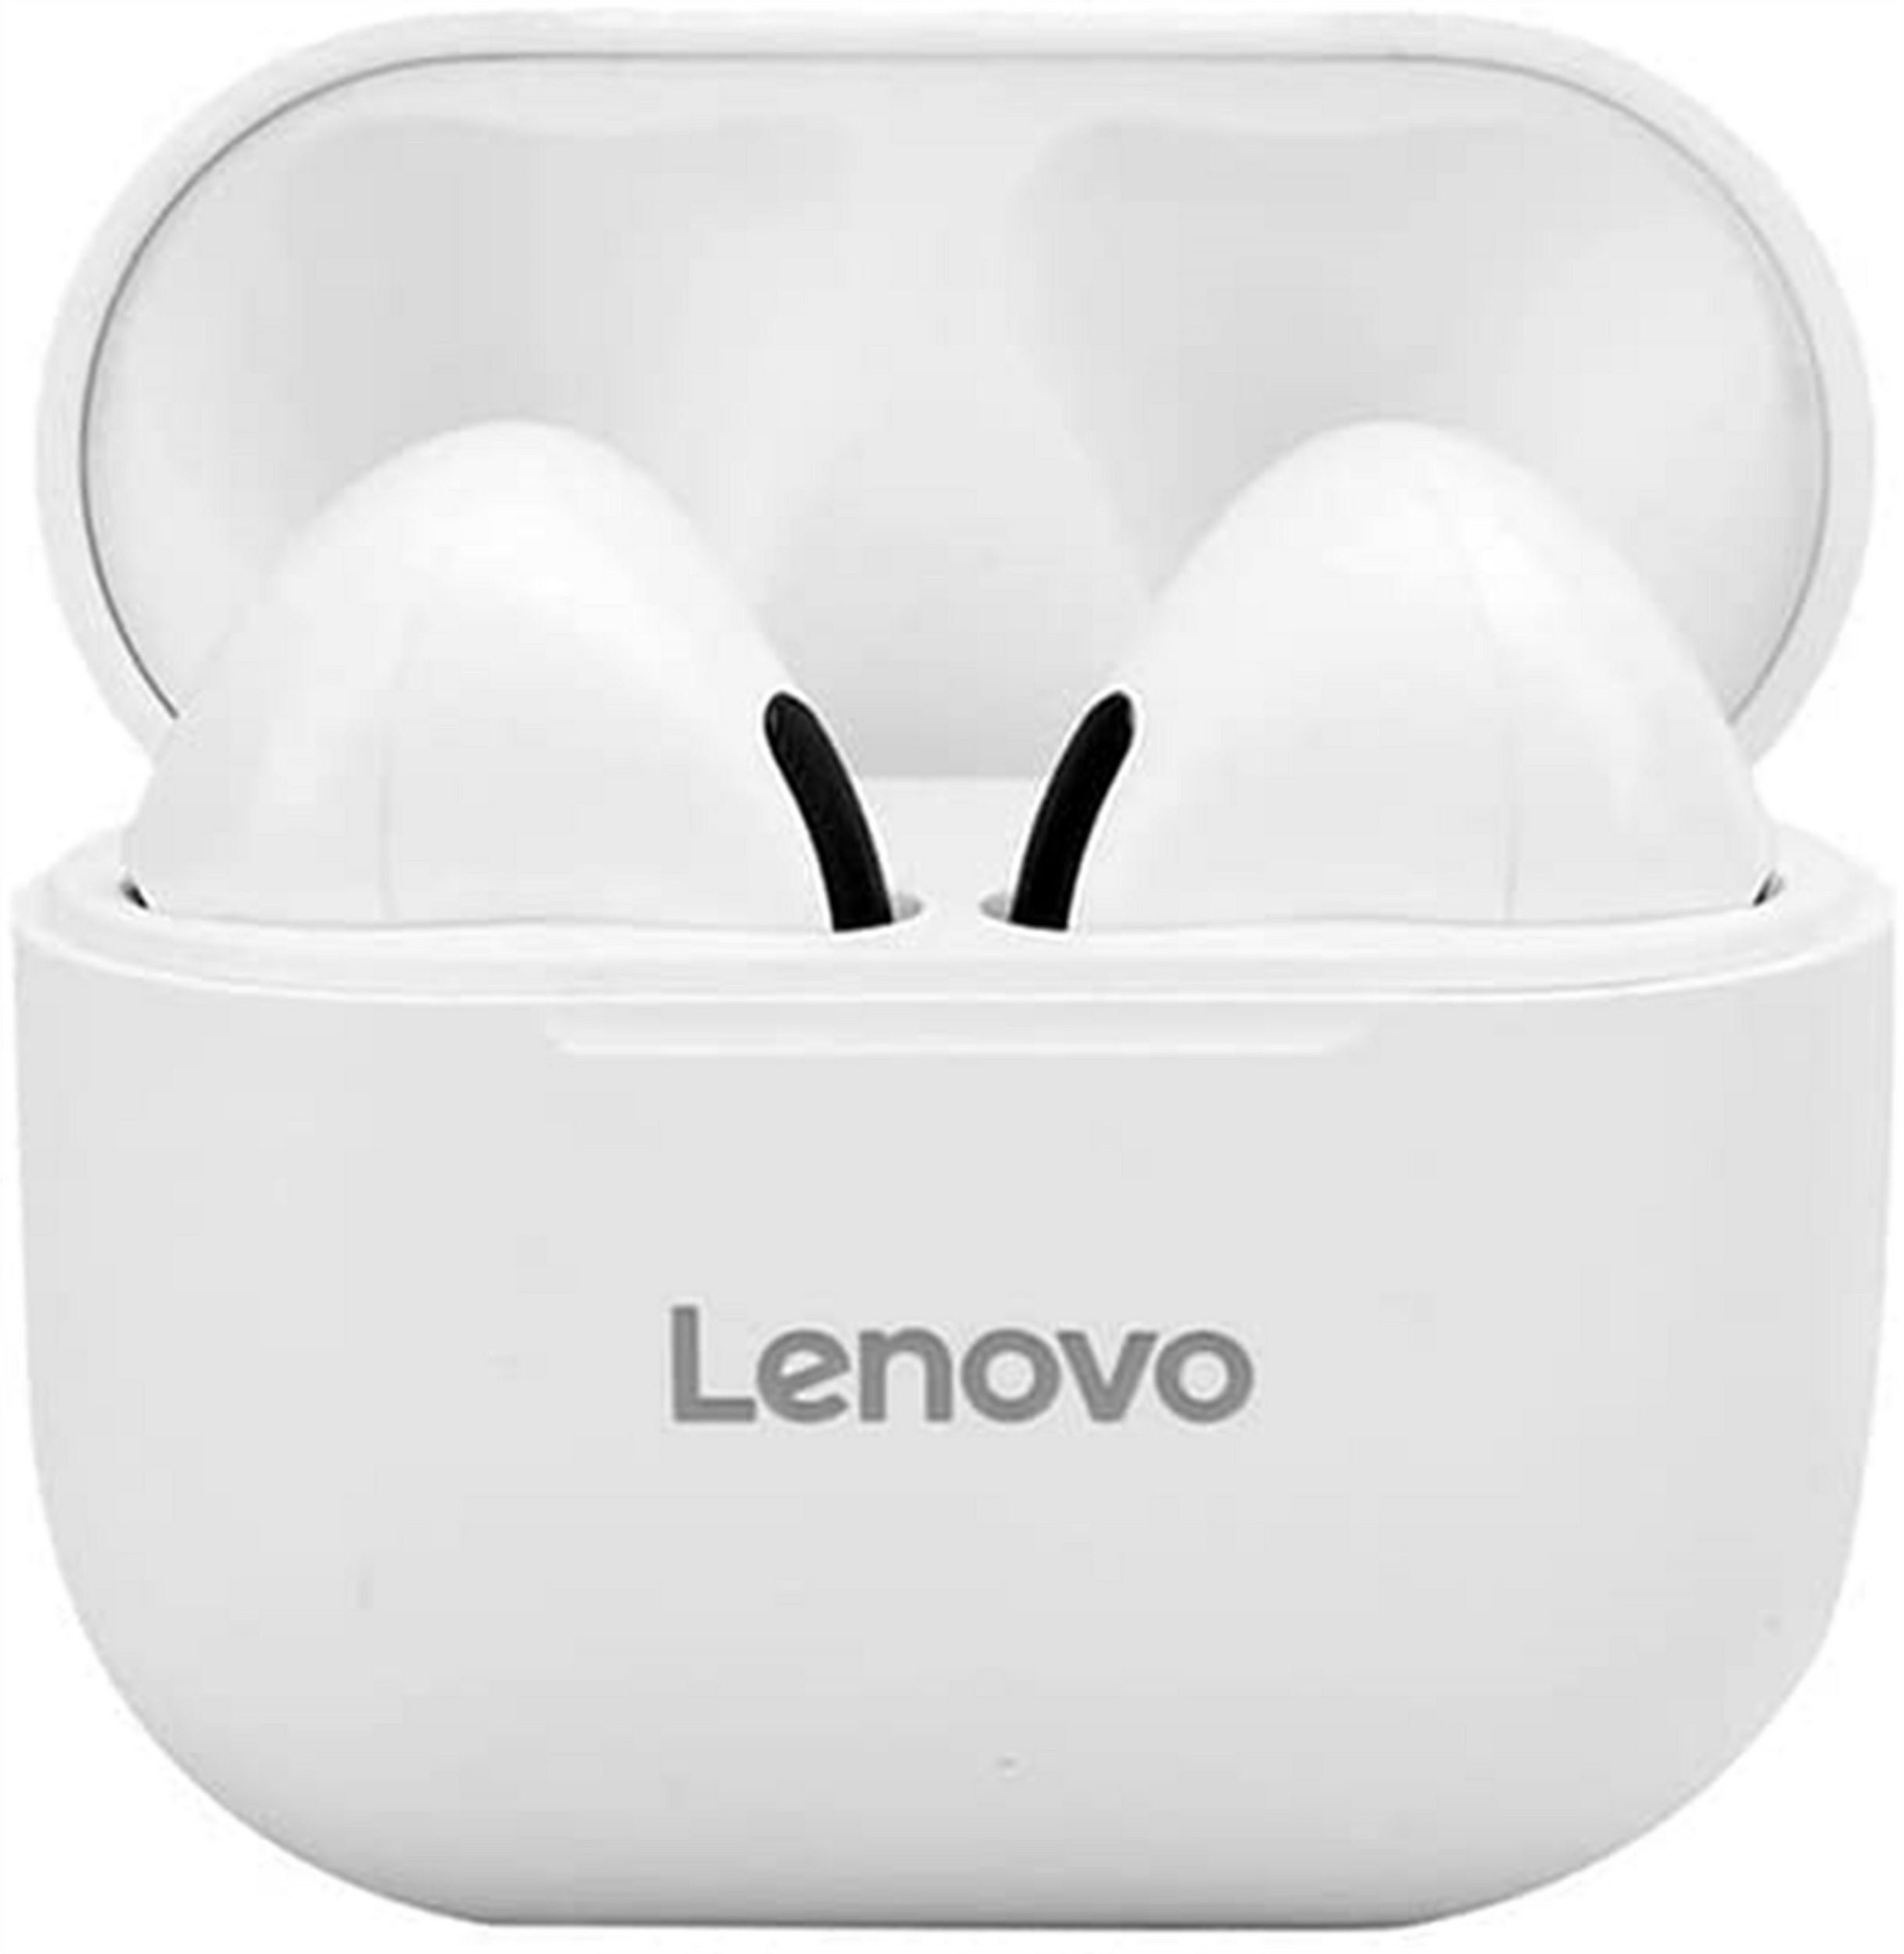 Lenovo LP40 mit Touch-Steuerung Bluetooth-Kopfhörer (True Wireless, Siri, Bluetooth 5.0, kabellos, Stereo-Ohrhörer mit 300 mAh Kopfhörer-Ladehülle - Weiss)